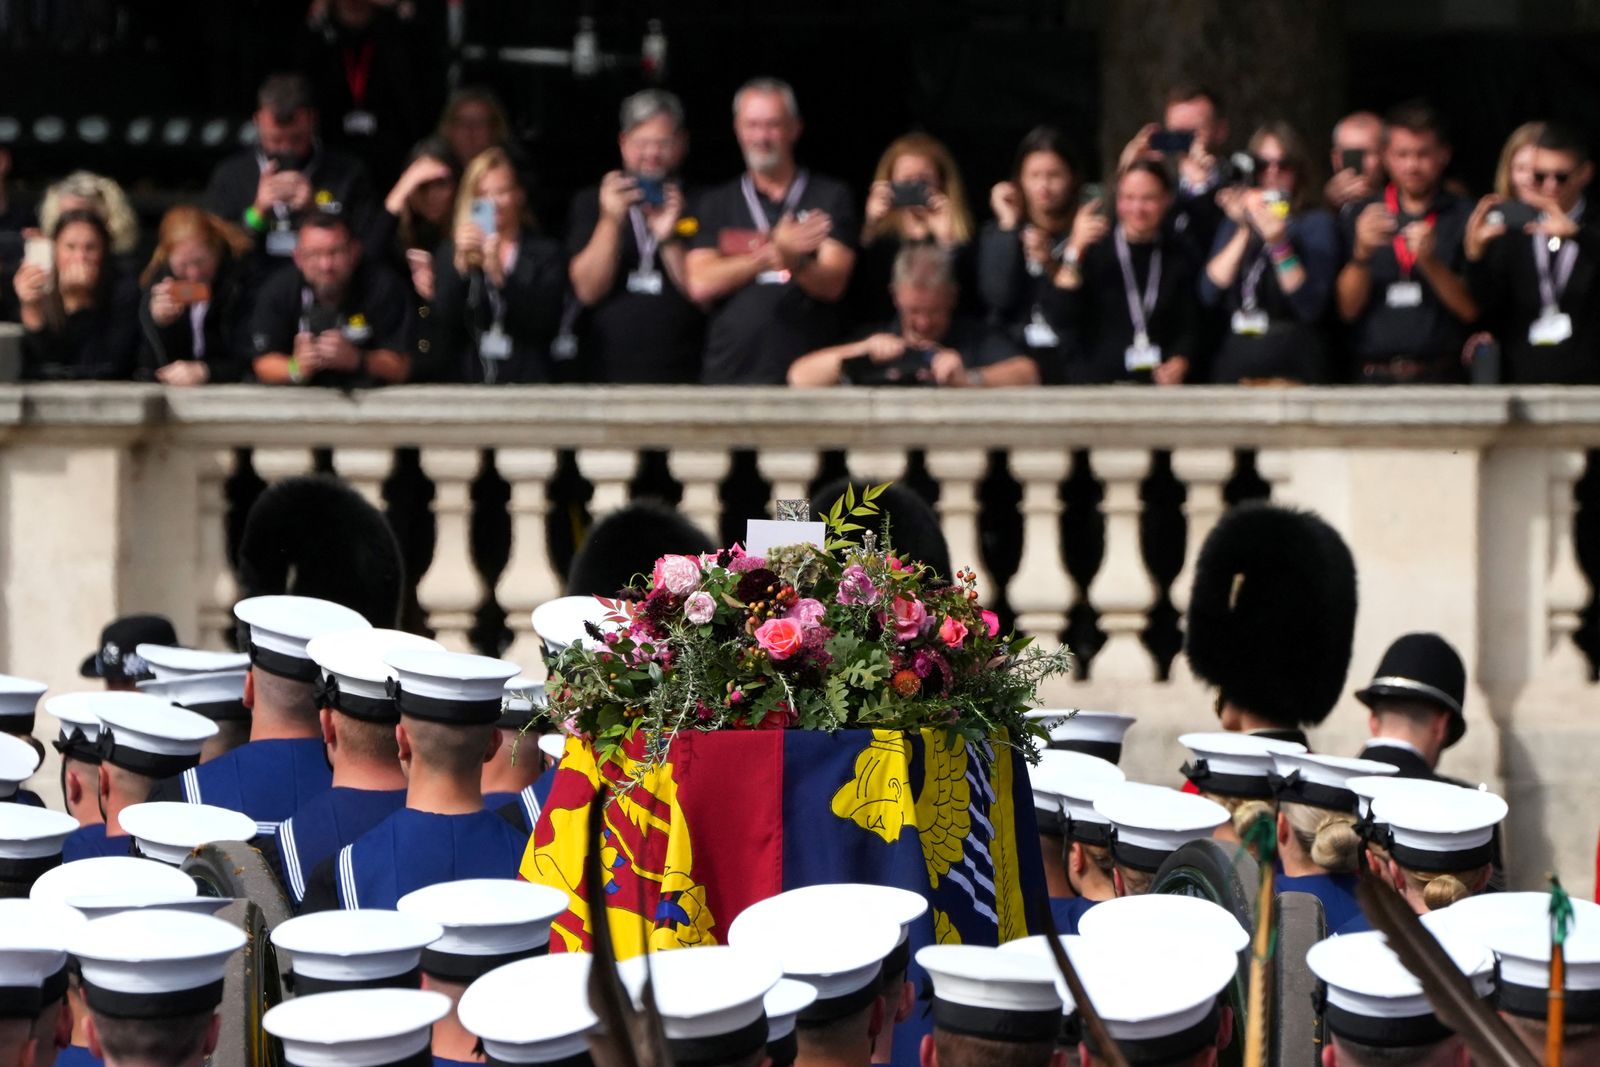 أفراد من الحرس الملكي يحملون نعش الملكة إليزابيث الثانية في موكب الجنازة بلندن- 19 سبتمبر 2022 - via REUTERS